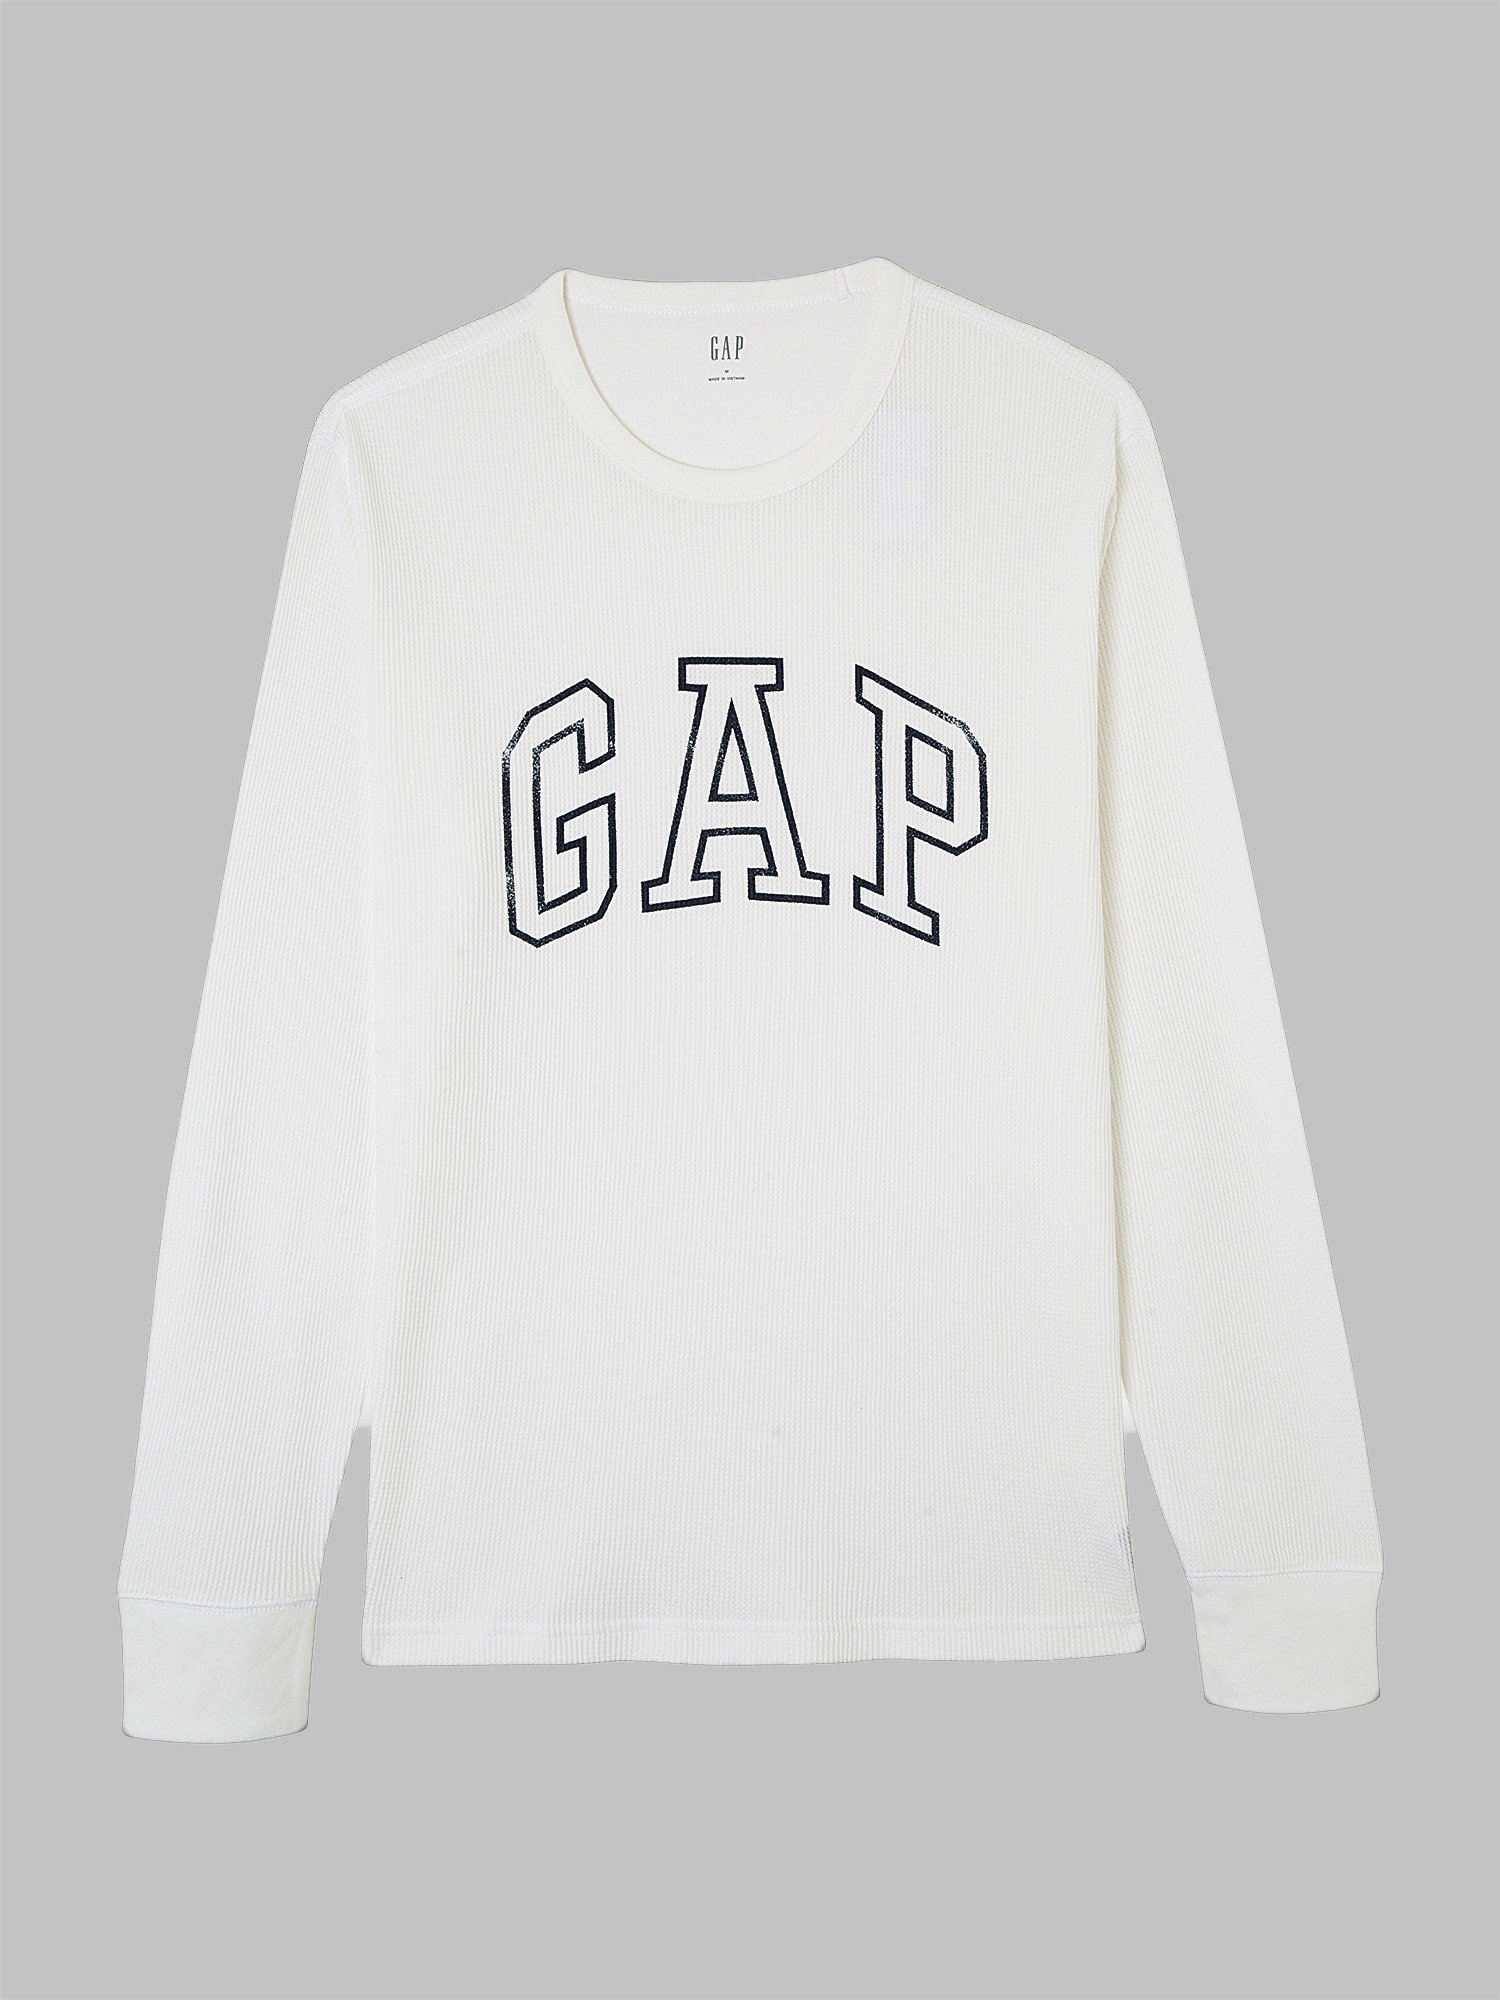 Gap Logo Termal T-Shirt product image